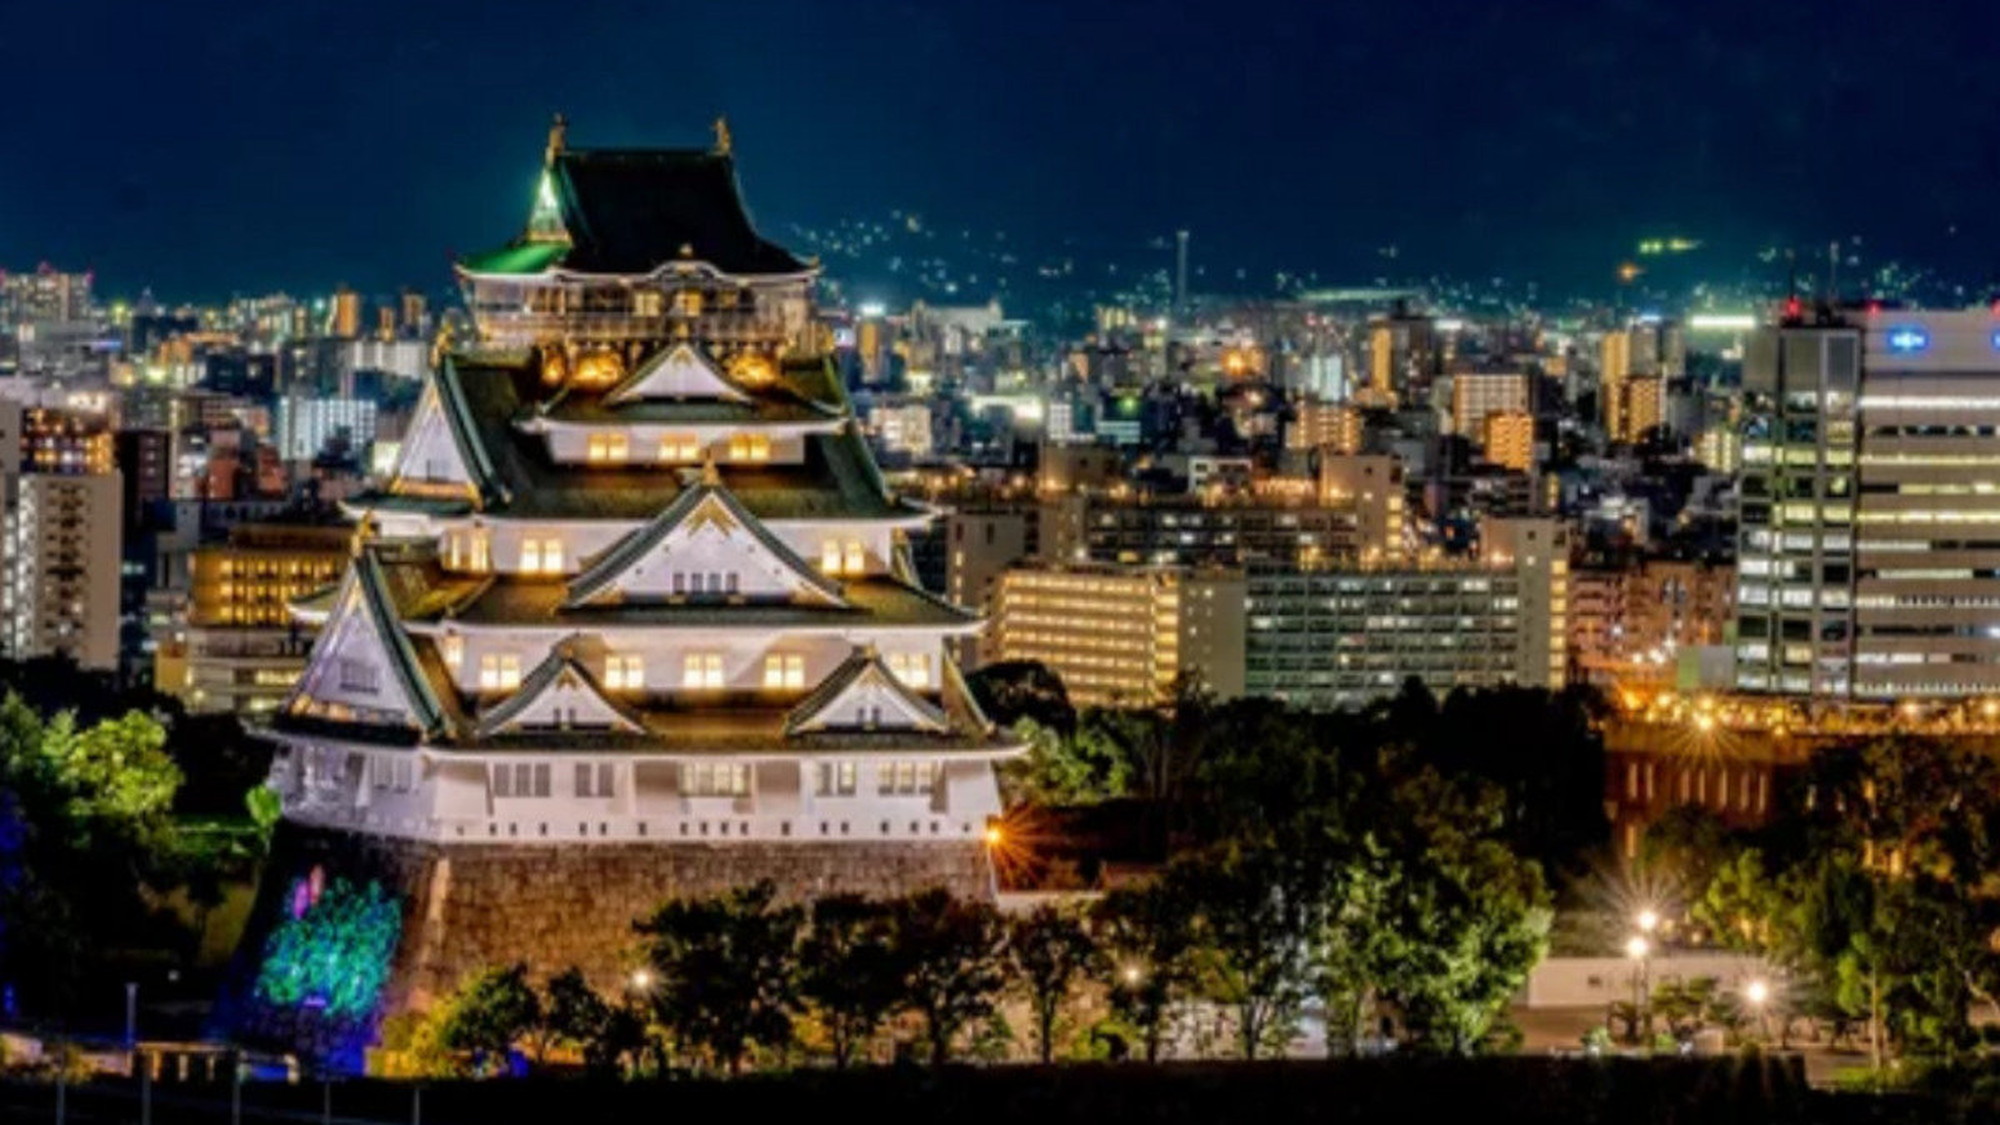 【大阪城】ライトアップされた大阪城も風情があります。